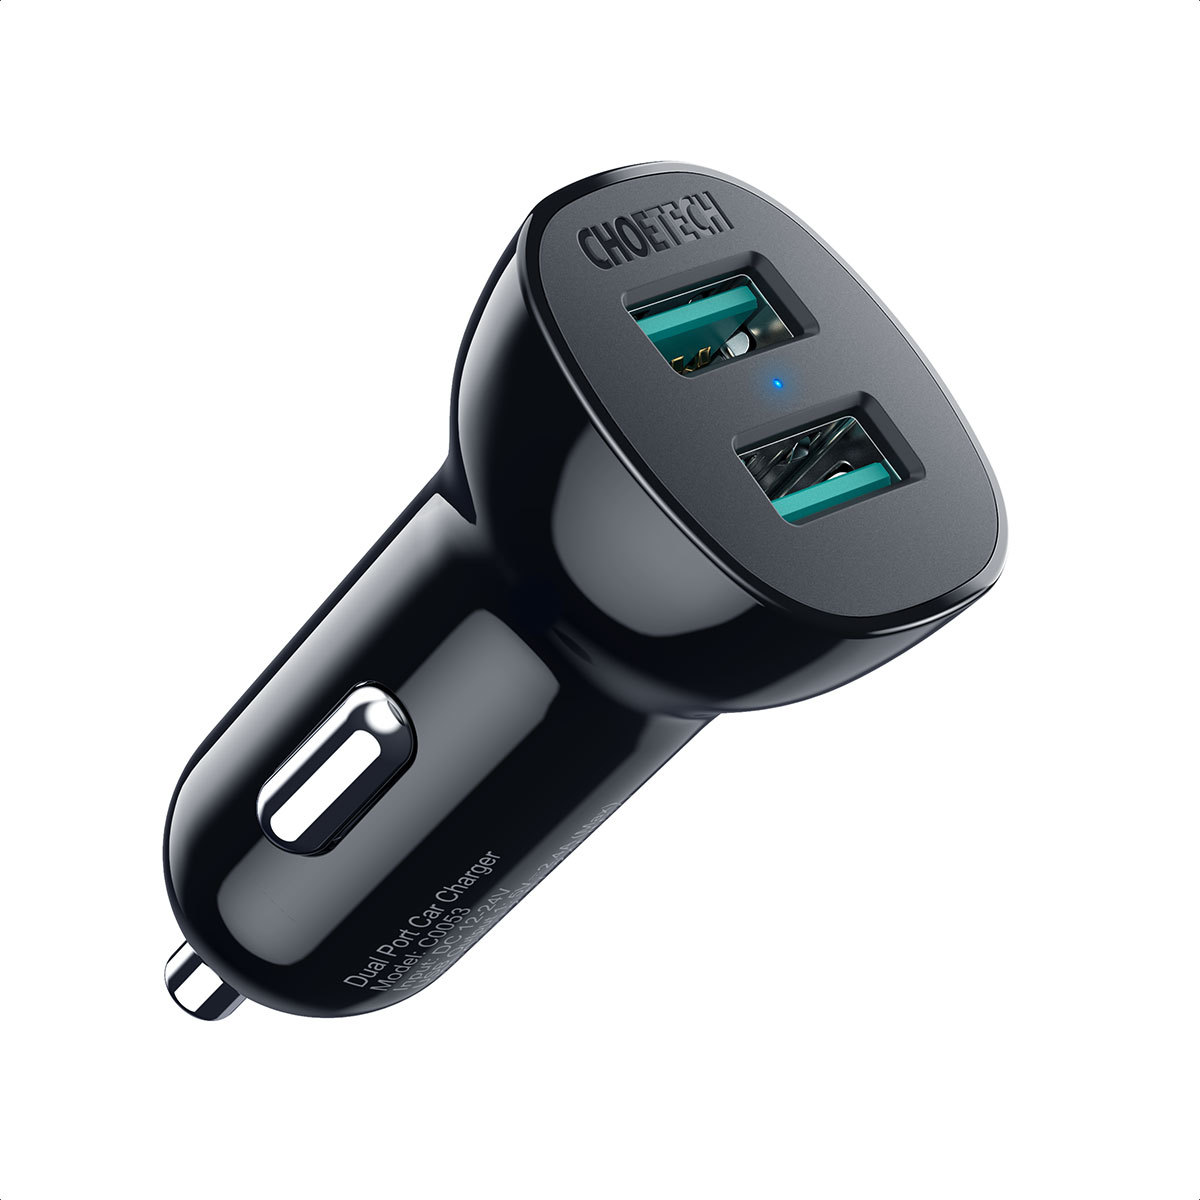 CHOETECH qc3.0车充快充 双口USB-A口36W智能车载充电器 汽车手机